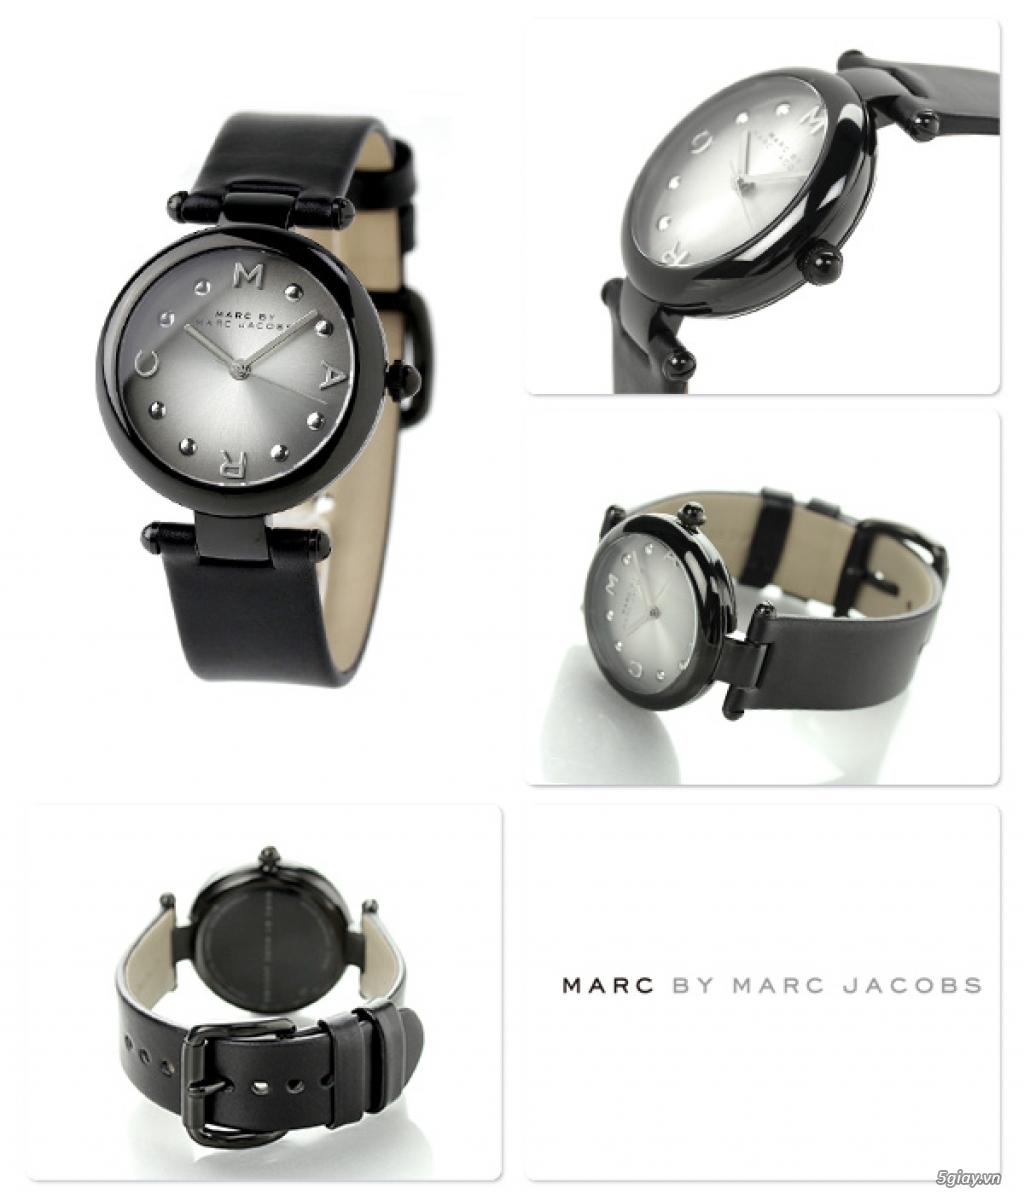 Thanh lý đồng hồ nữ Marc Jacobs (Authentic và nguyên tag) - 3